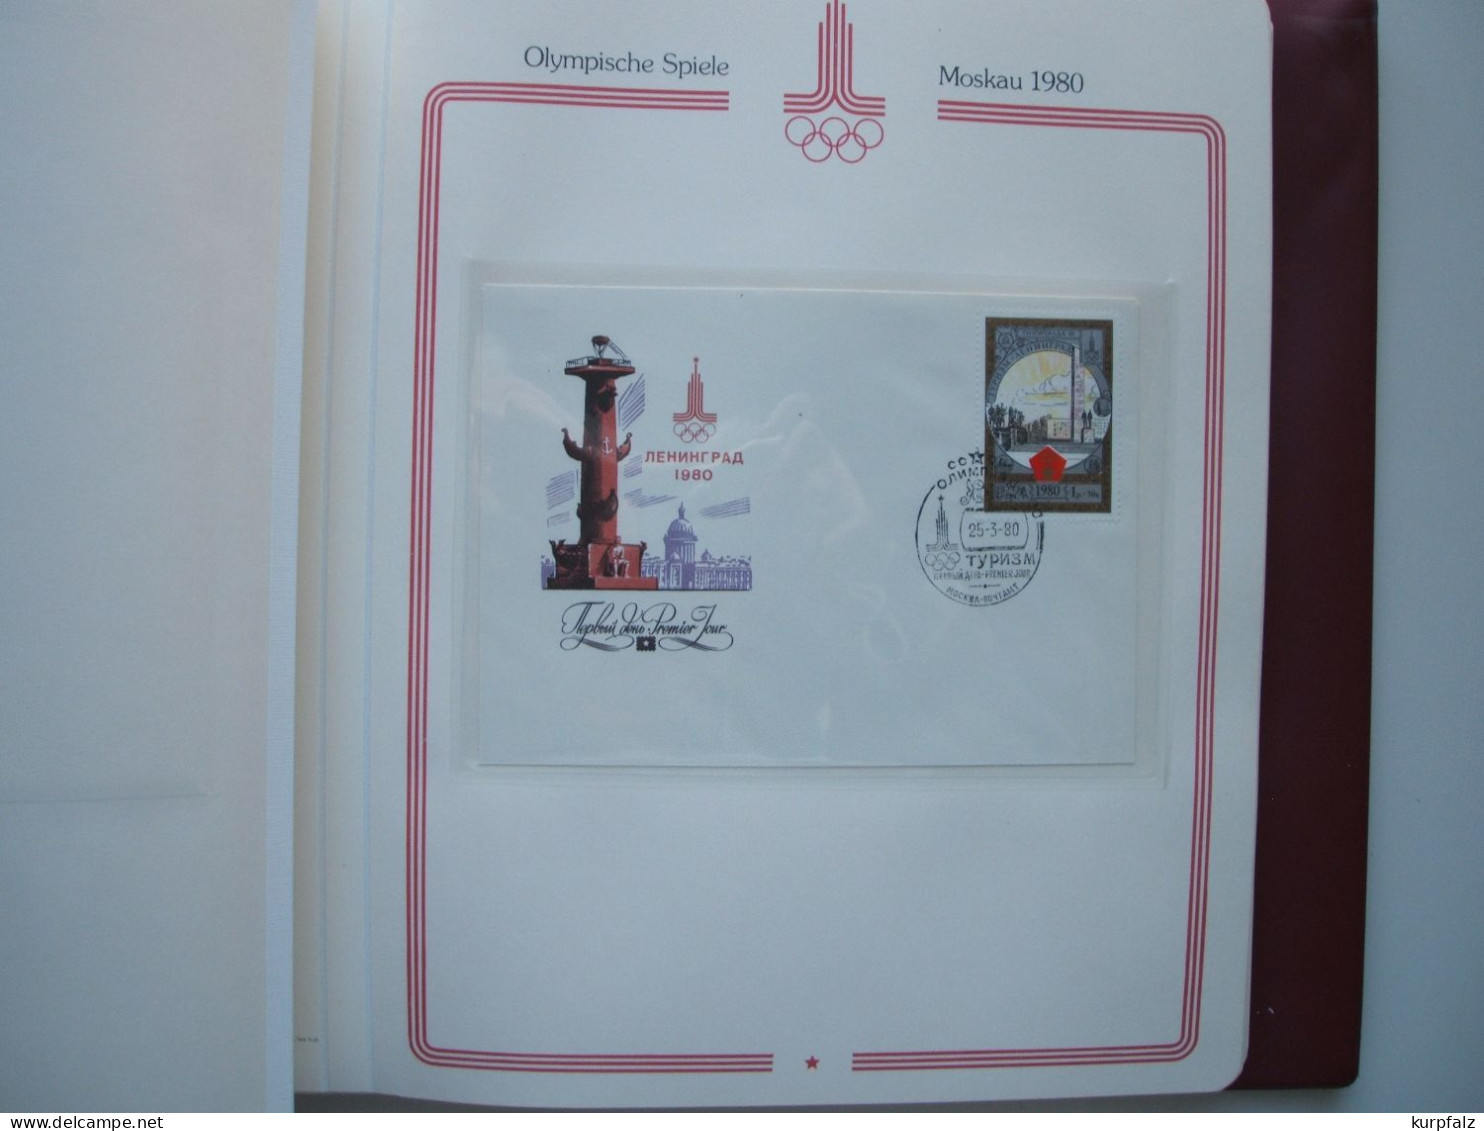 Olympische Spiele Moskau 1980 - über 40 Sowjet-Briefe mit SSt. im Borek-Album